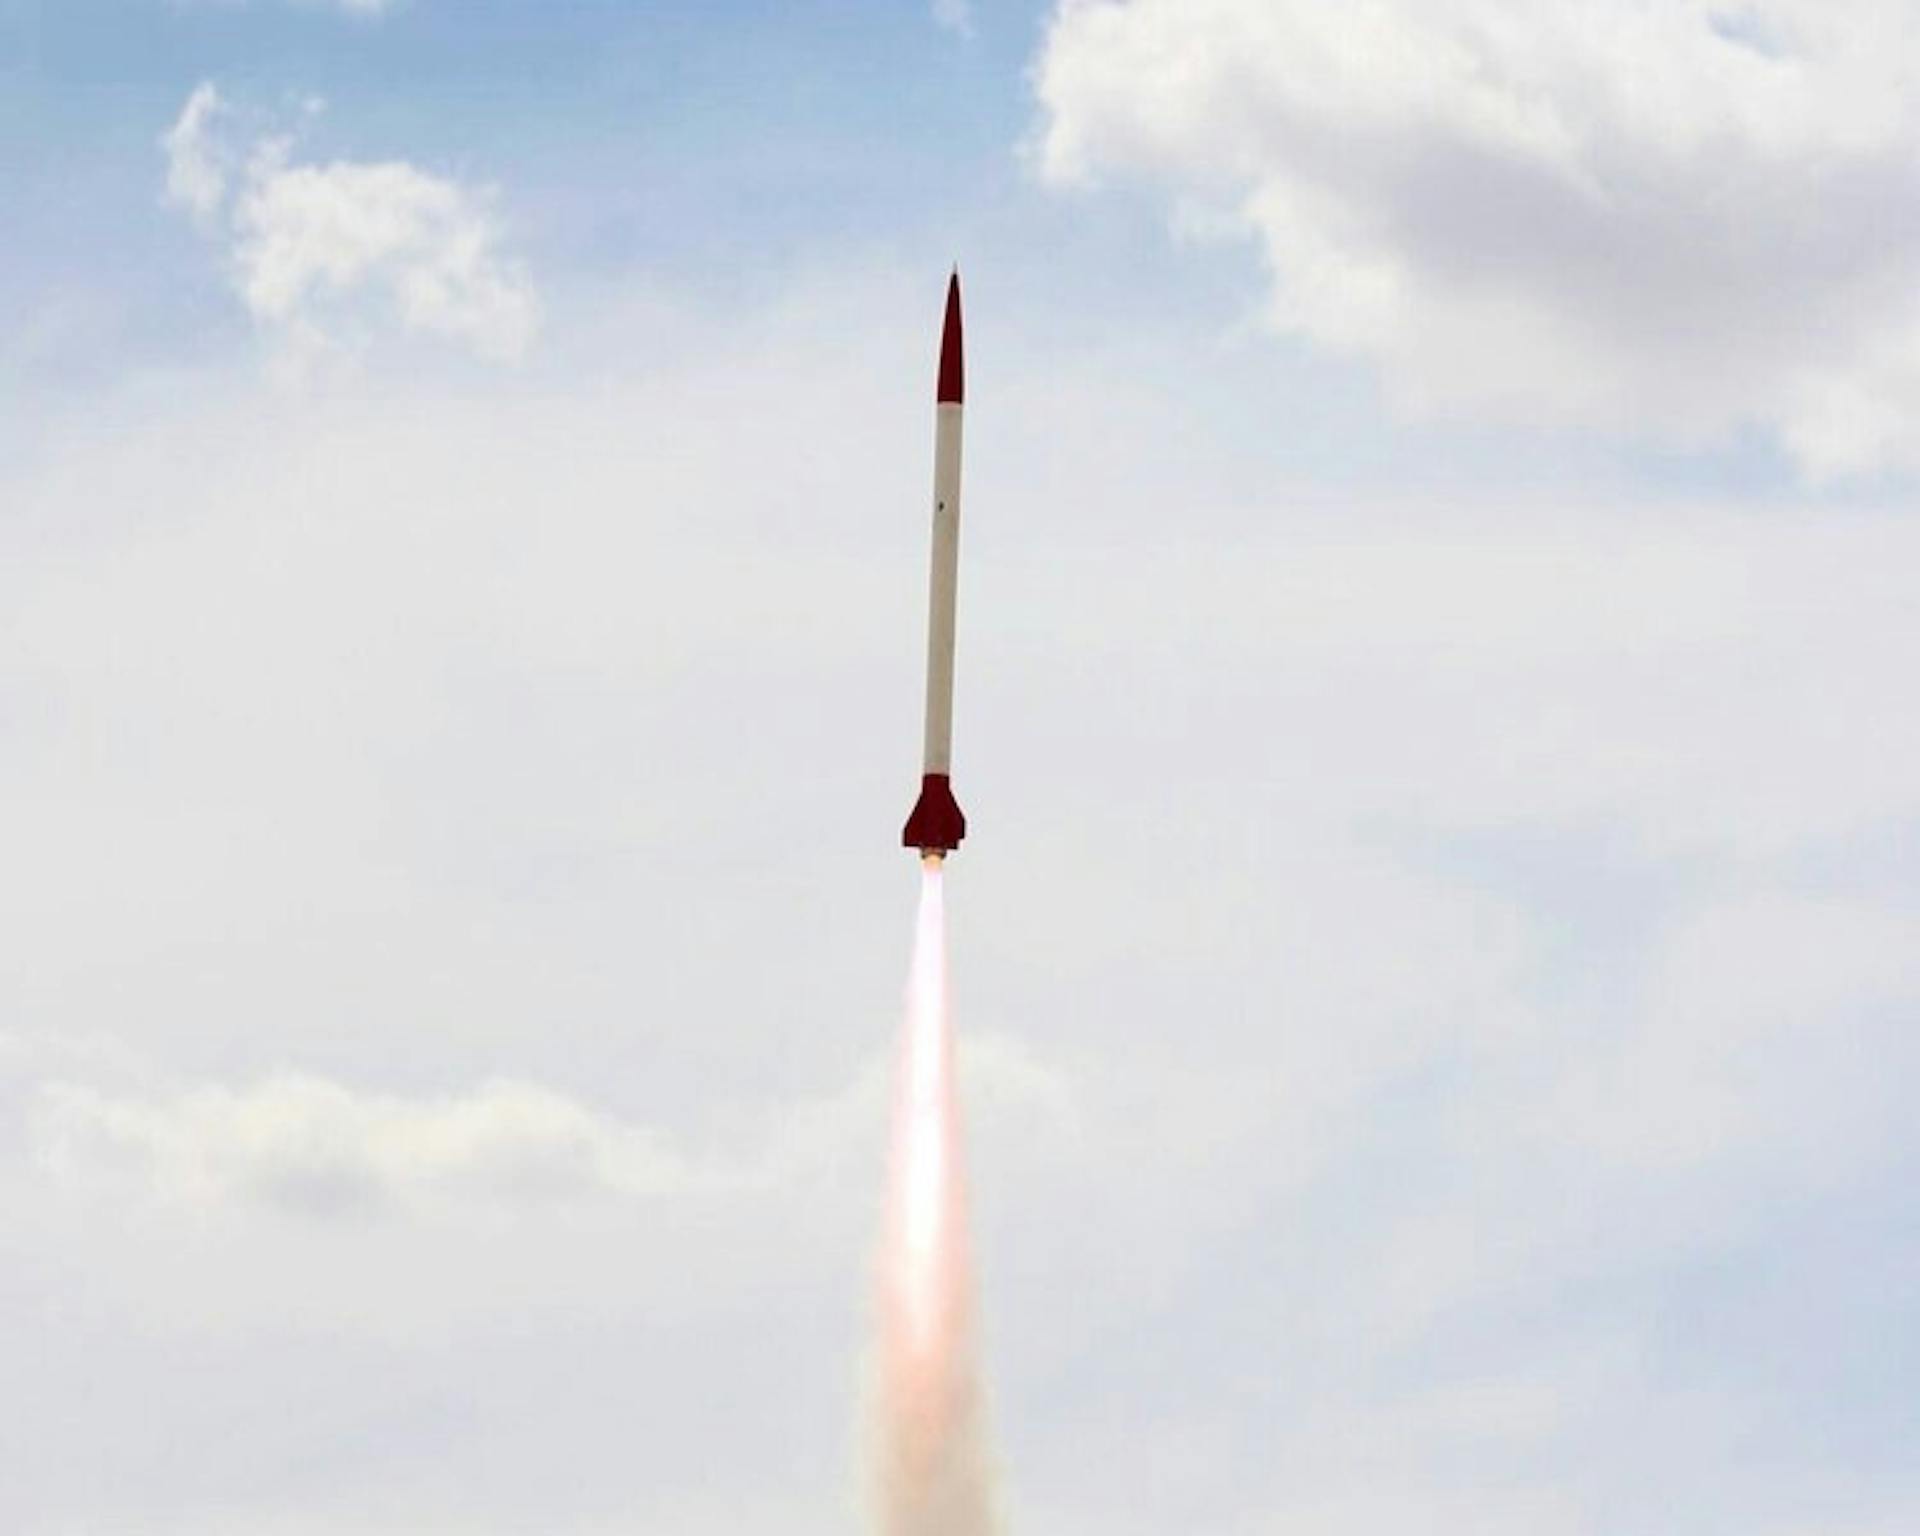 Hermes I は 32,000 フィートまでの発射に成功し、名目上は回収されました。